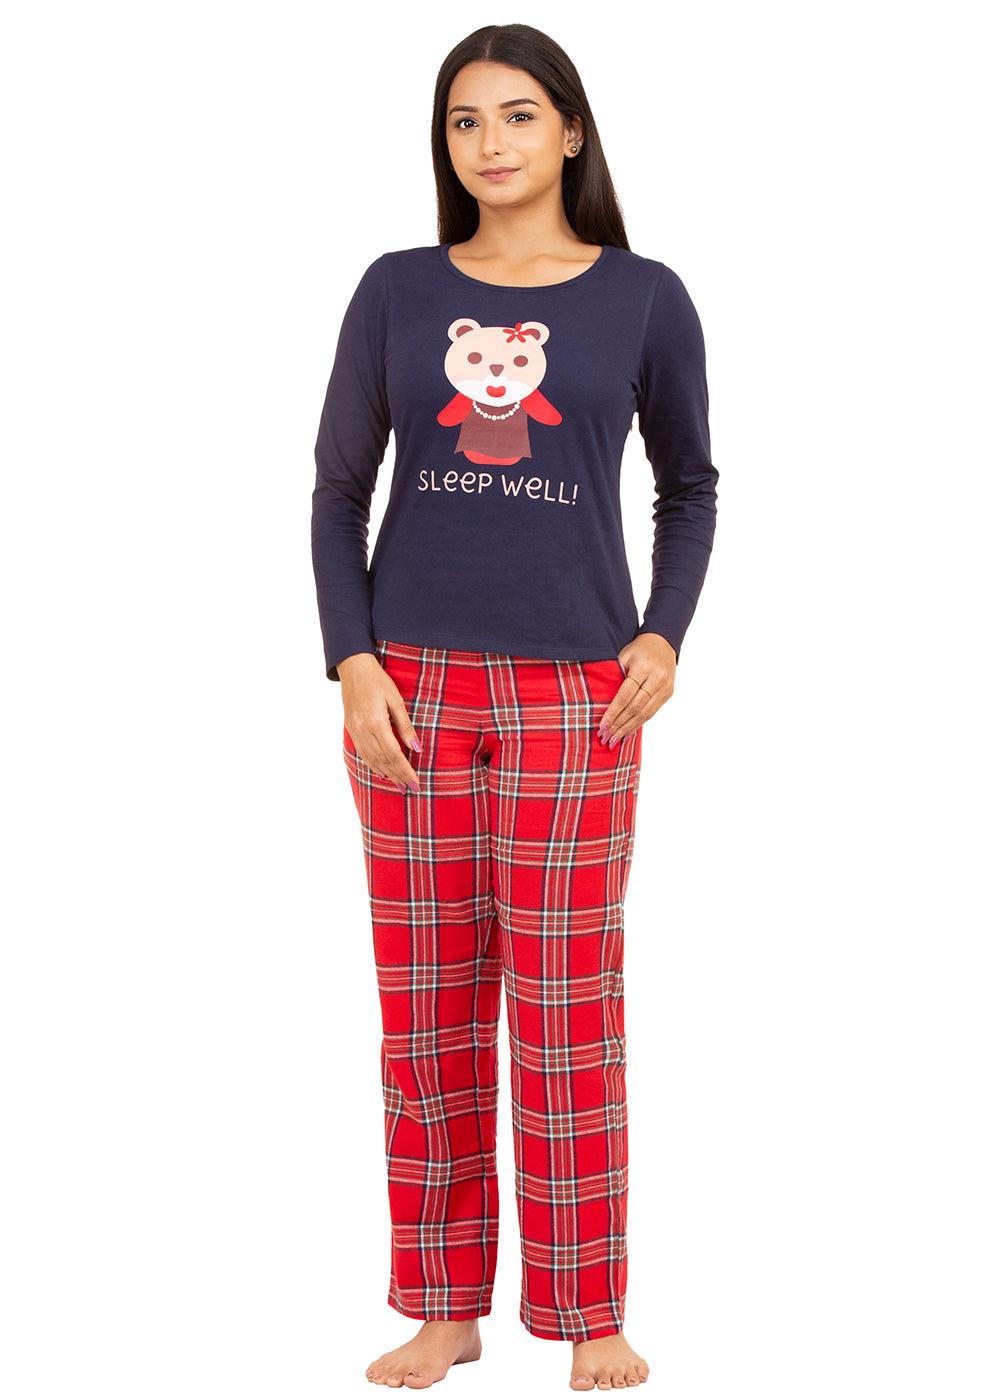 Pyjama Set for Women-Teddy Print